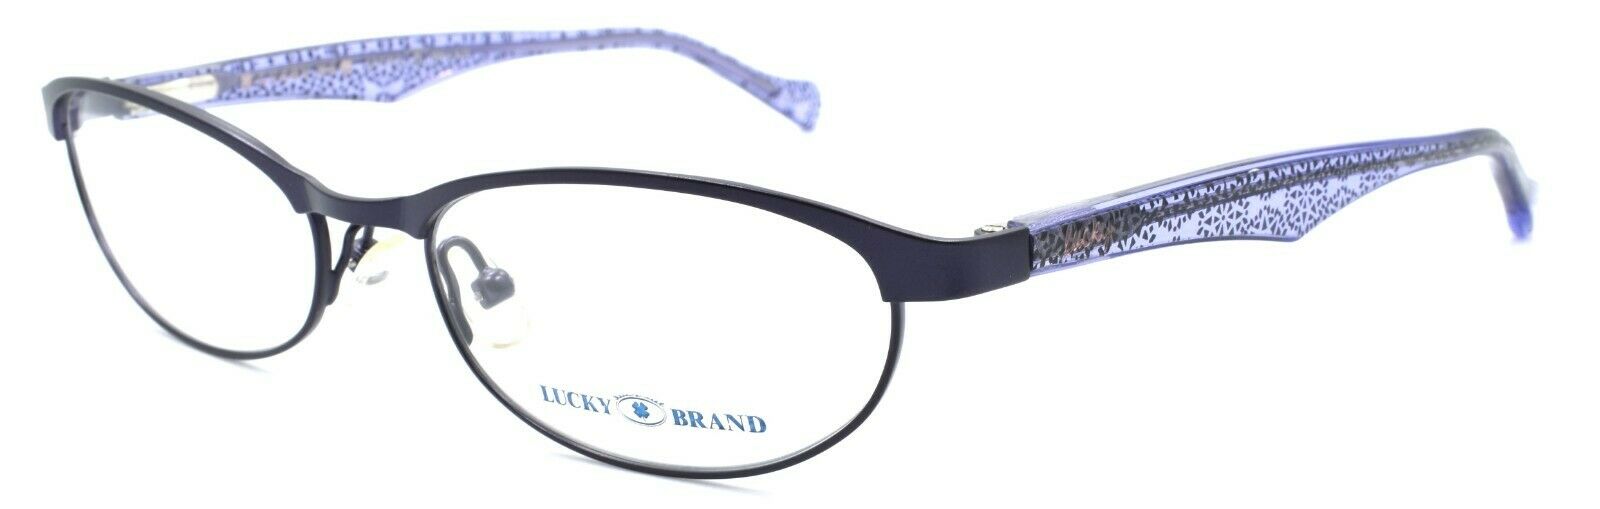 1-LUCKY BRAND Peppy Women's Eyeglasses Frames PETITE 49-16-130 Purple + CASE-751286248586-IKSpecs